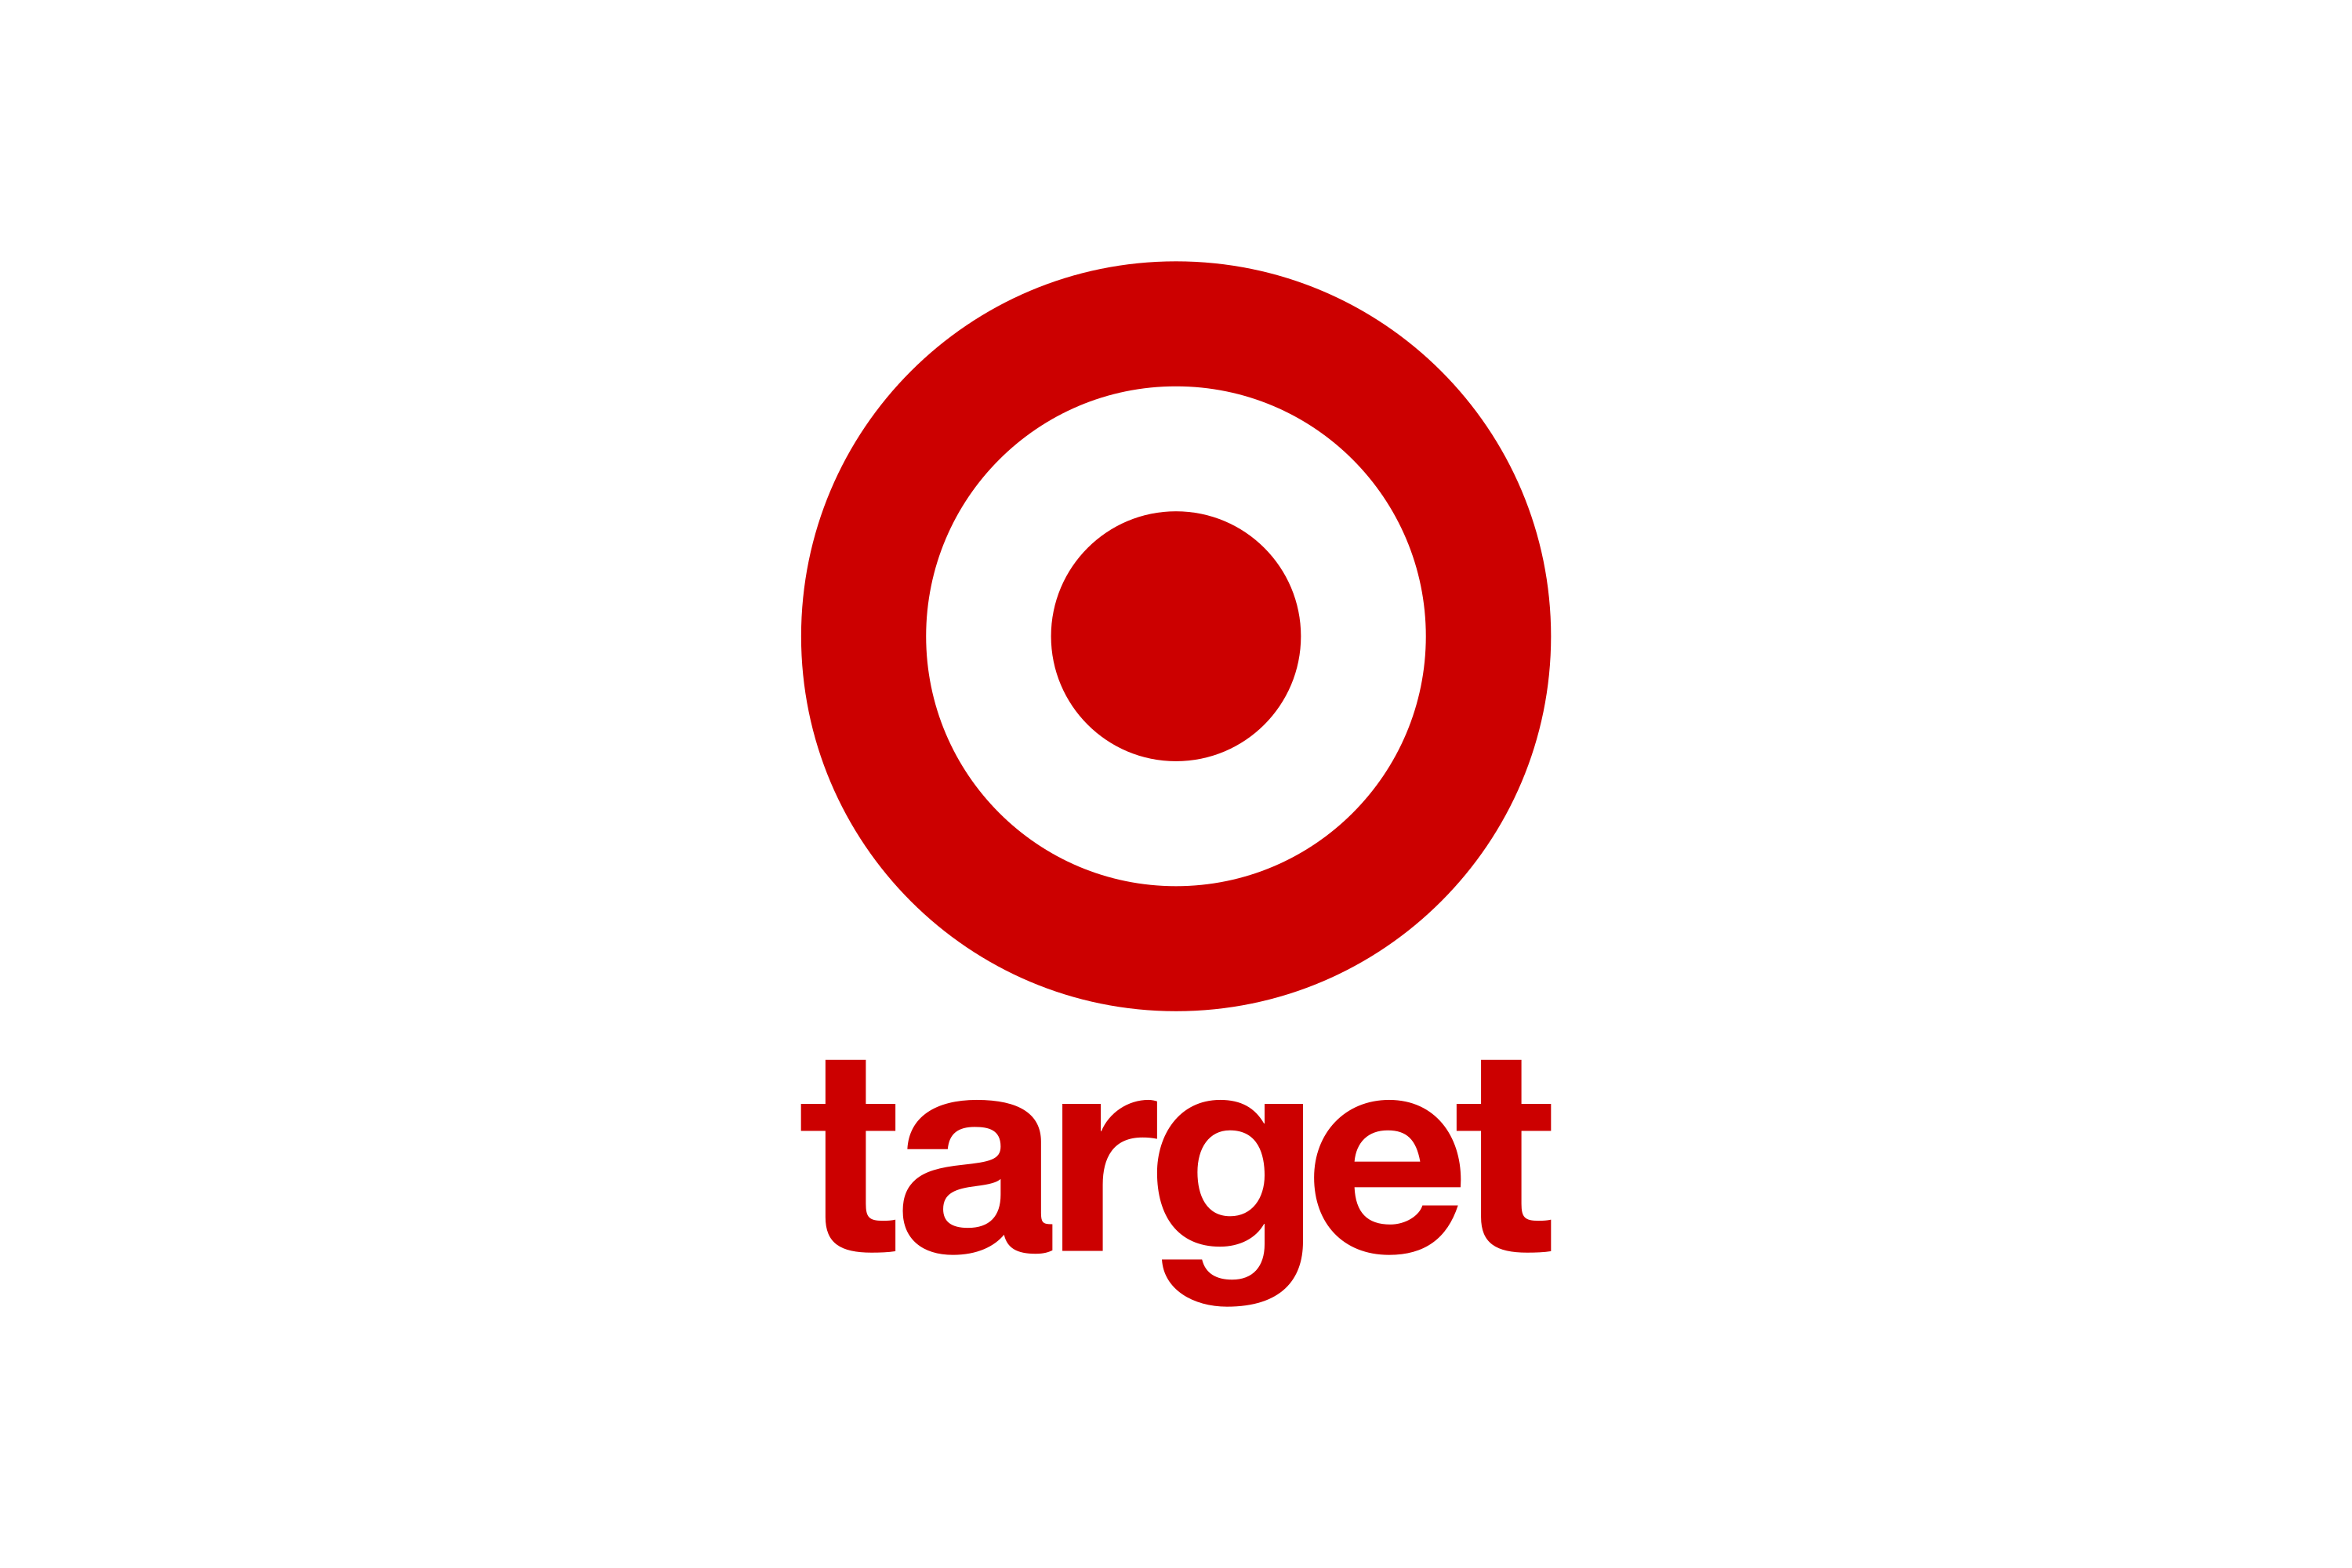 Download Target Australia (Lindsay's) Logo in SVG Vector or PNG File Format  